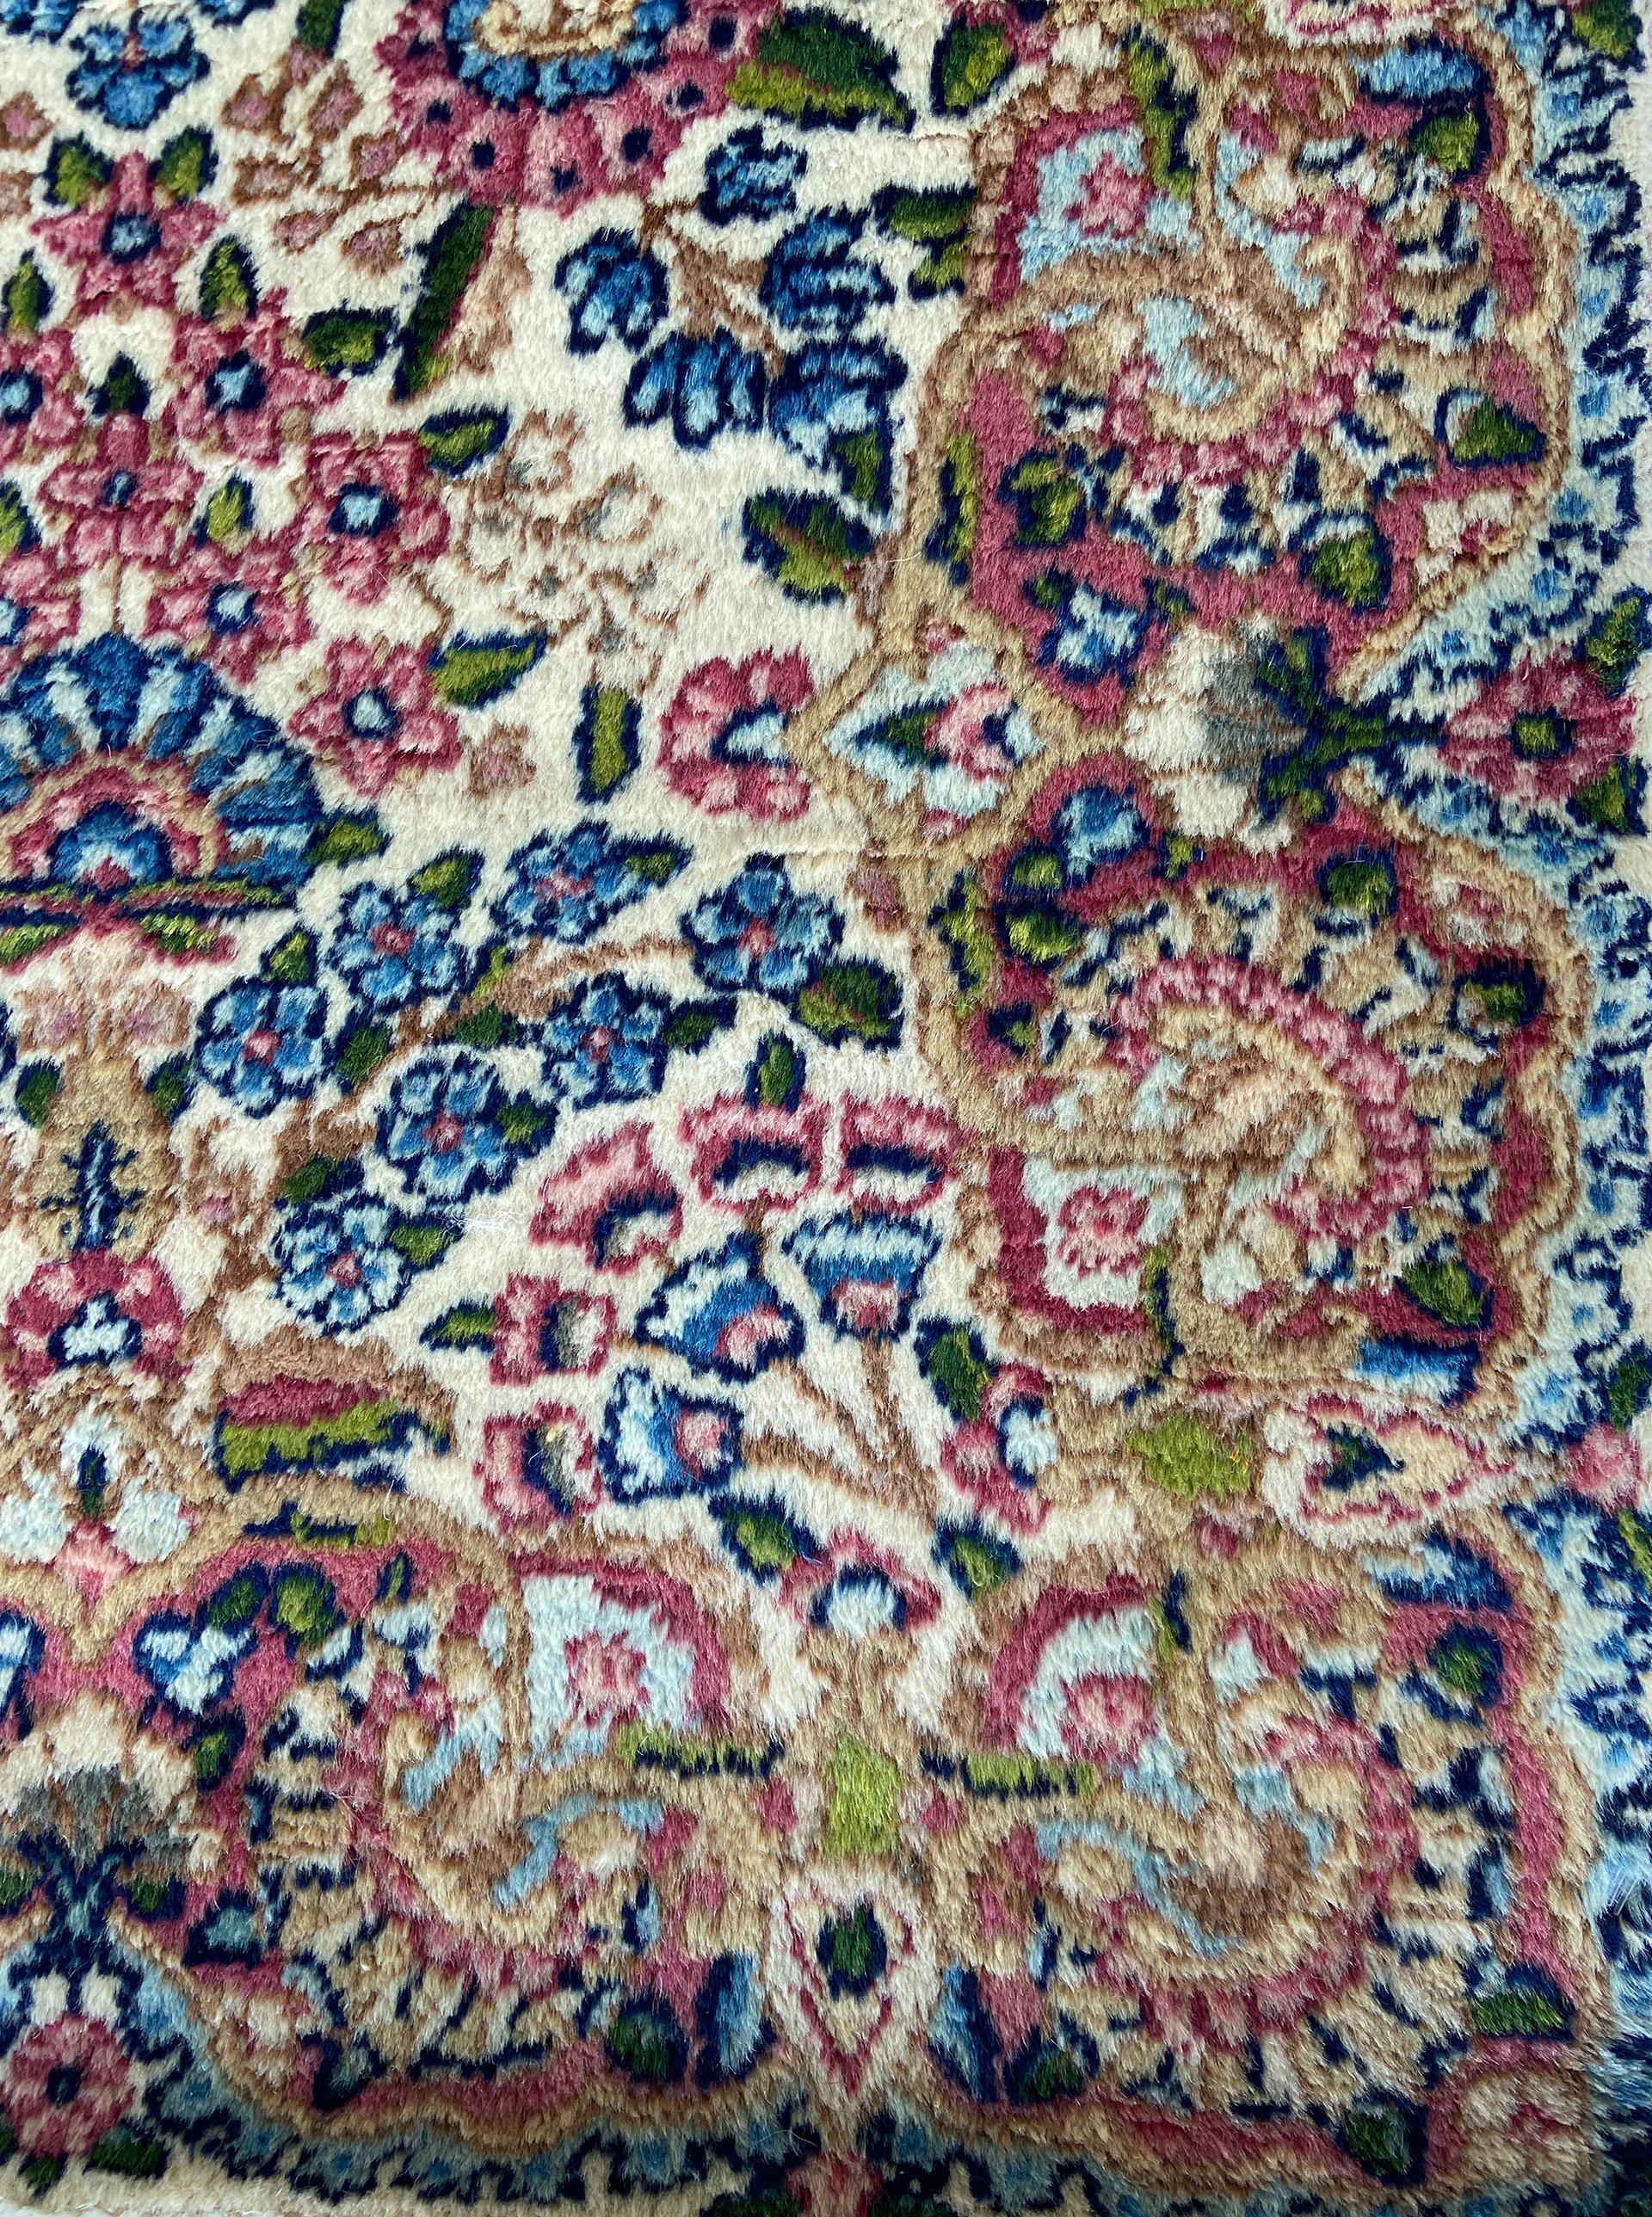 Dieser klassisch komponierte persische Kerman-Teppich mit seinem prächtigen All-Over-Gartenmuster spiegelt die Feinheiten der zeitlosen zentralasiatischen Teppichtrends wider. Verschiedene botanische Elemente, Blüten und Ranken verteilen sich